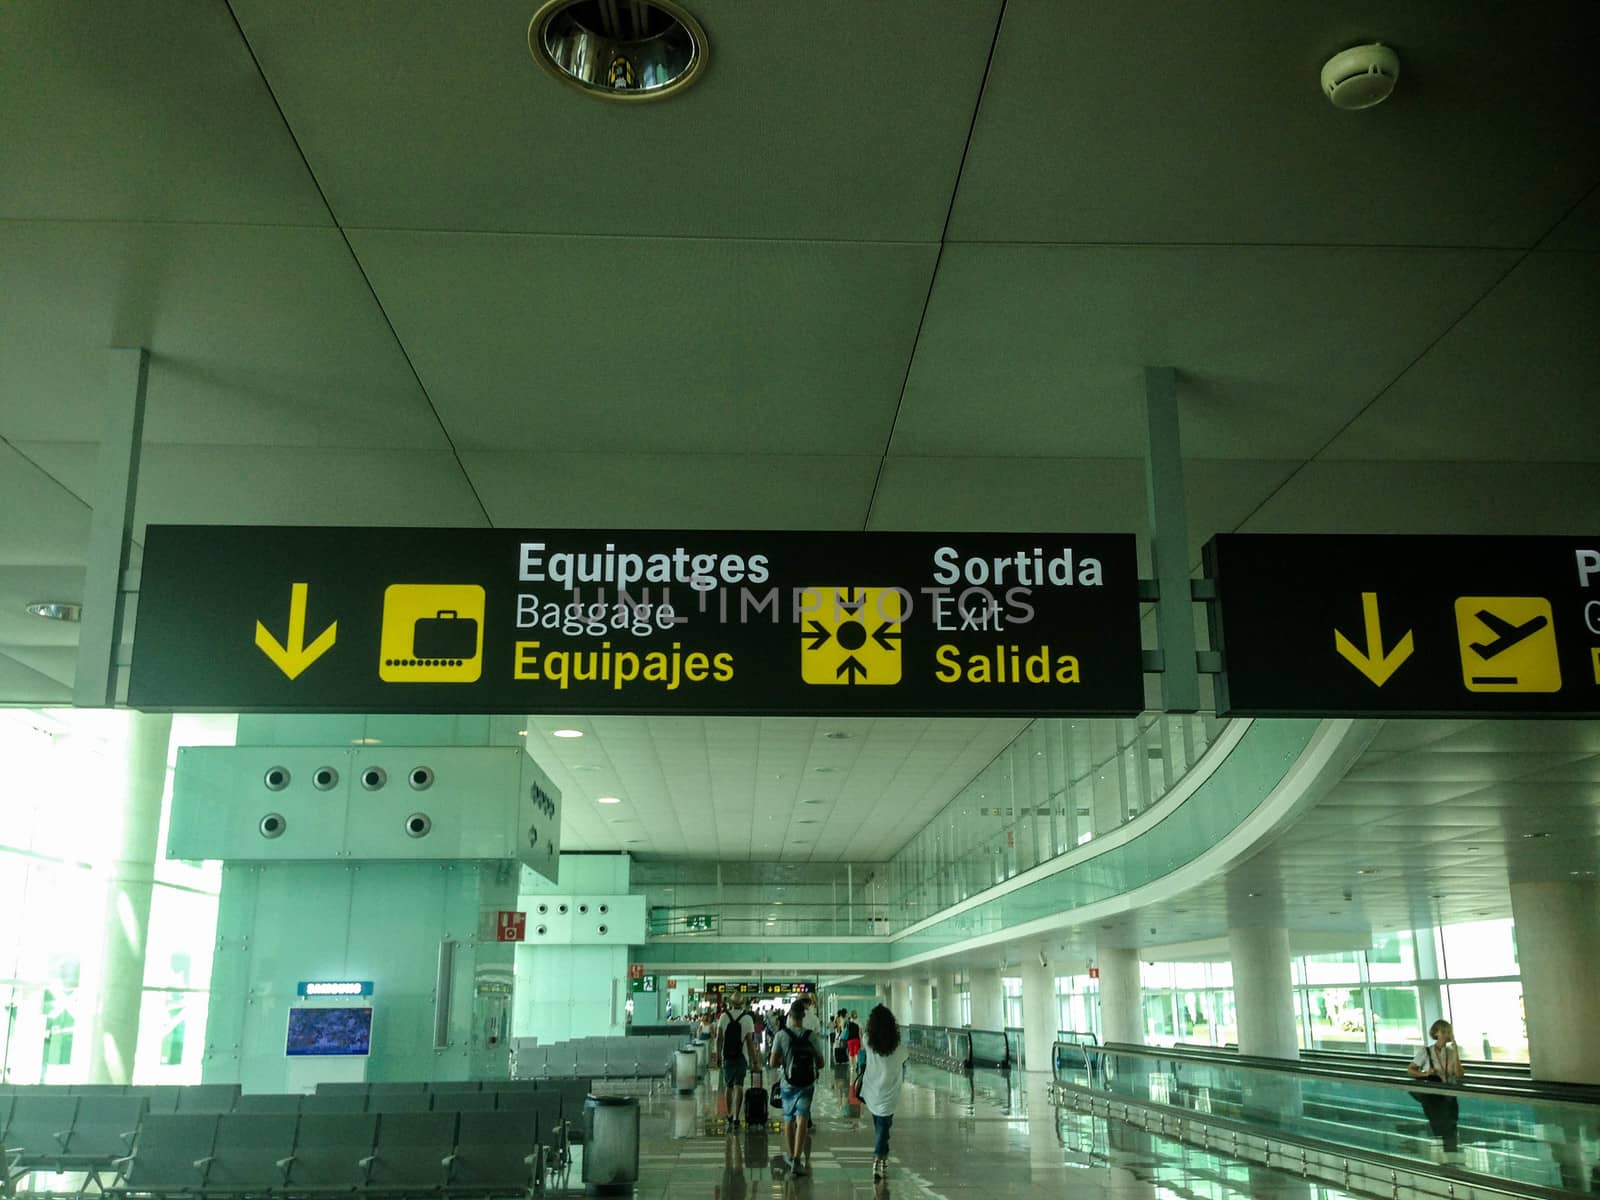 Josep Tarradellas Airport Barcelona-El Prat by cosca